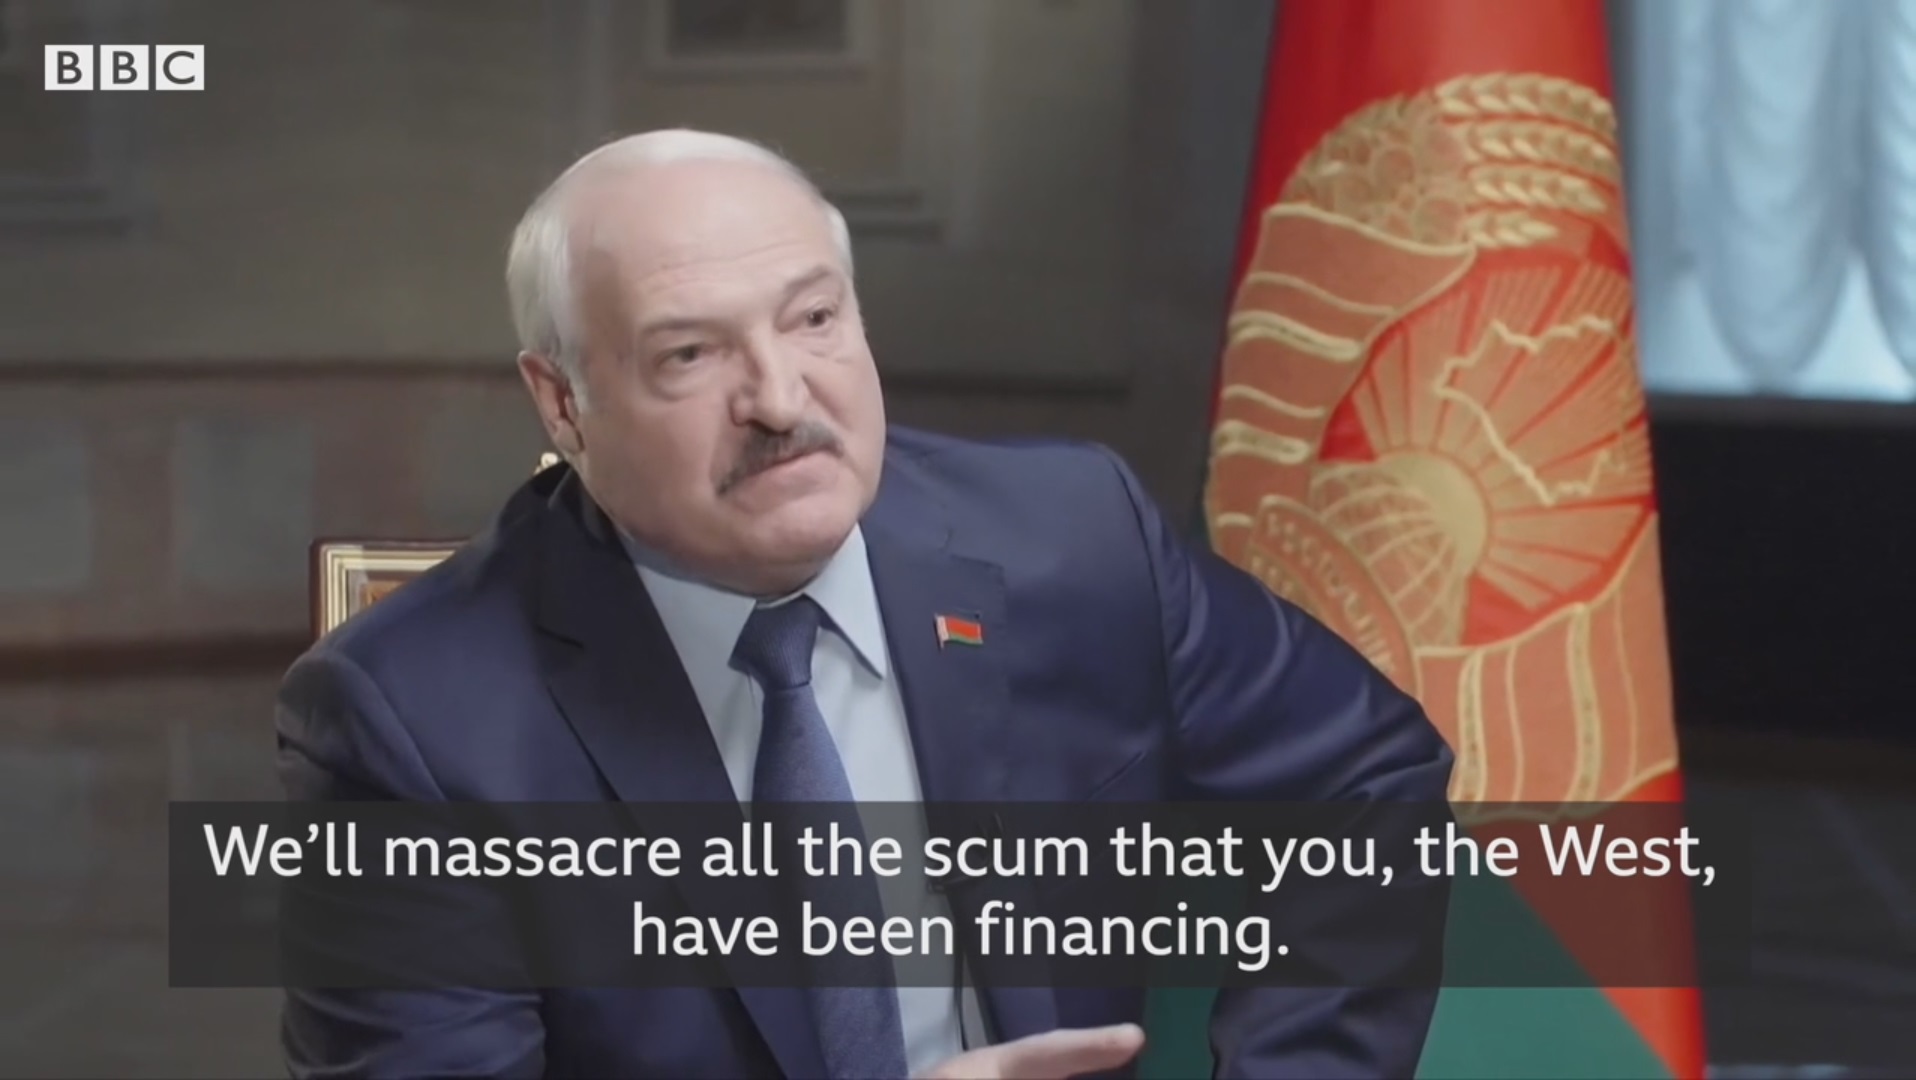 “Злится, но не врёт”: поведенческий аналитик об интервью Лукашенко BBC